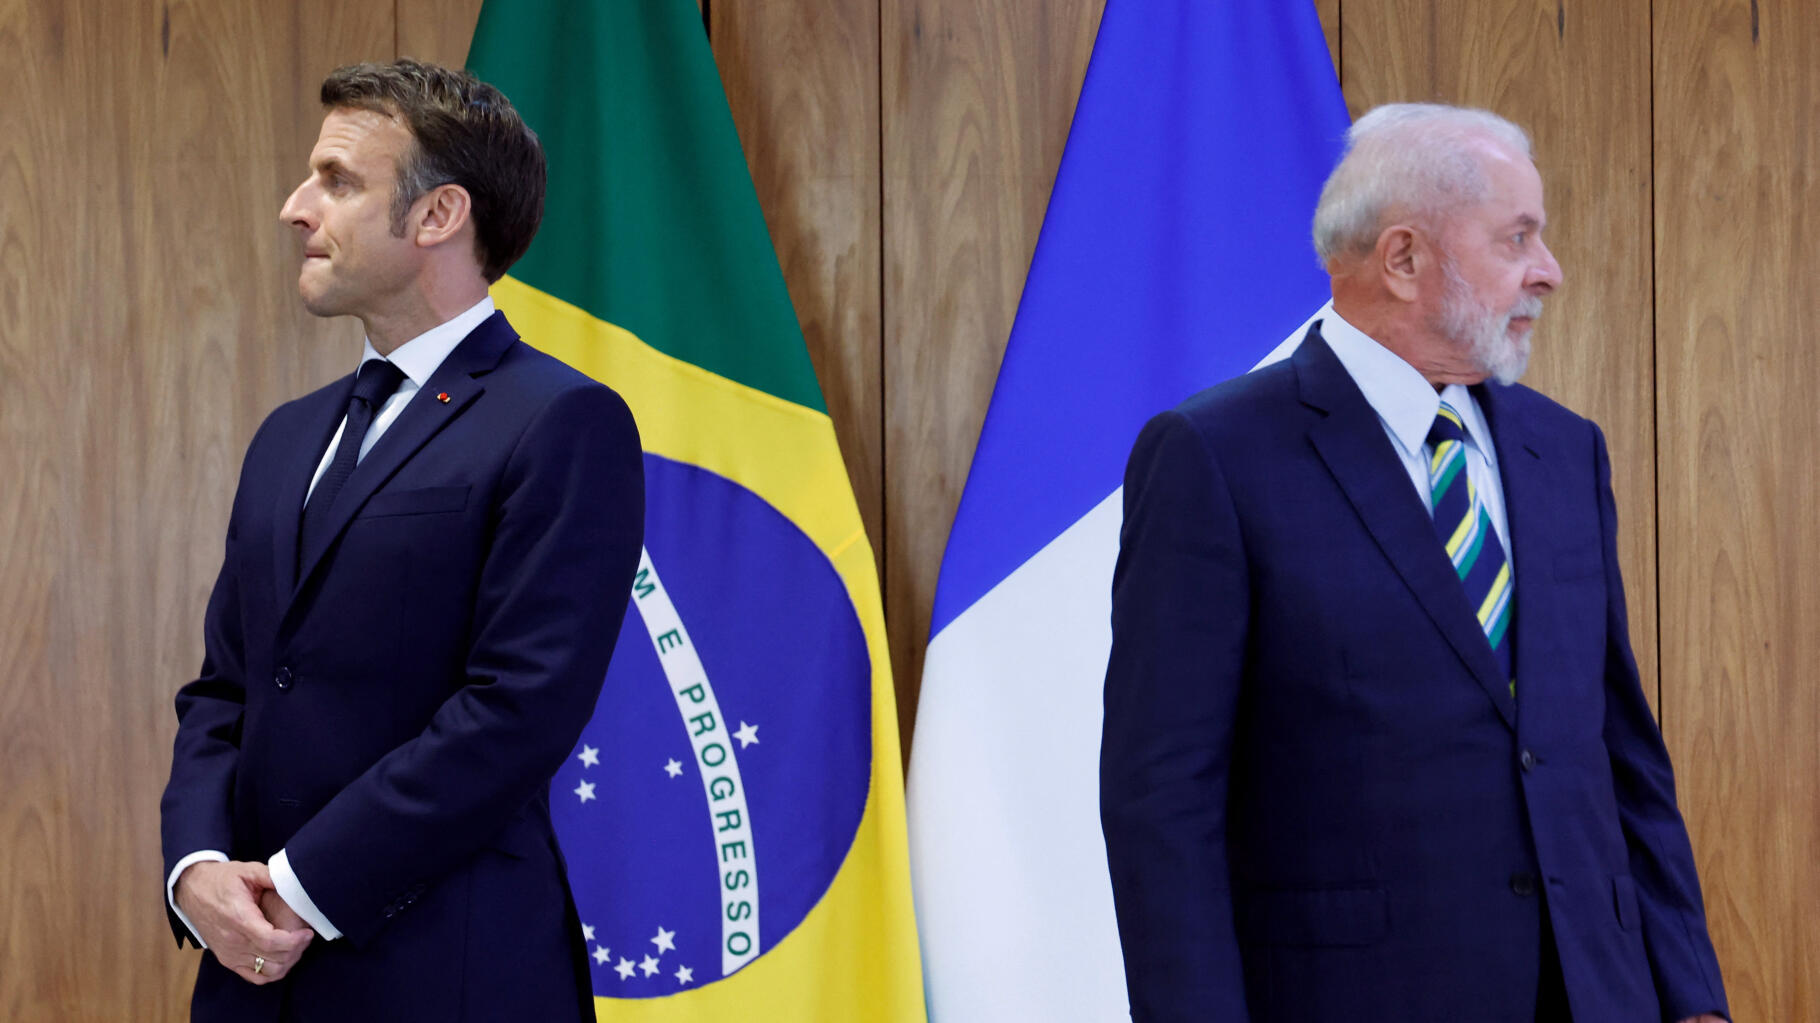 Zaproszenie Putina na szczyt G20 w Brazylii?  Macron prosi Lulę, aby podjęła decyzję „w drodze konsensusu”.